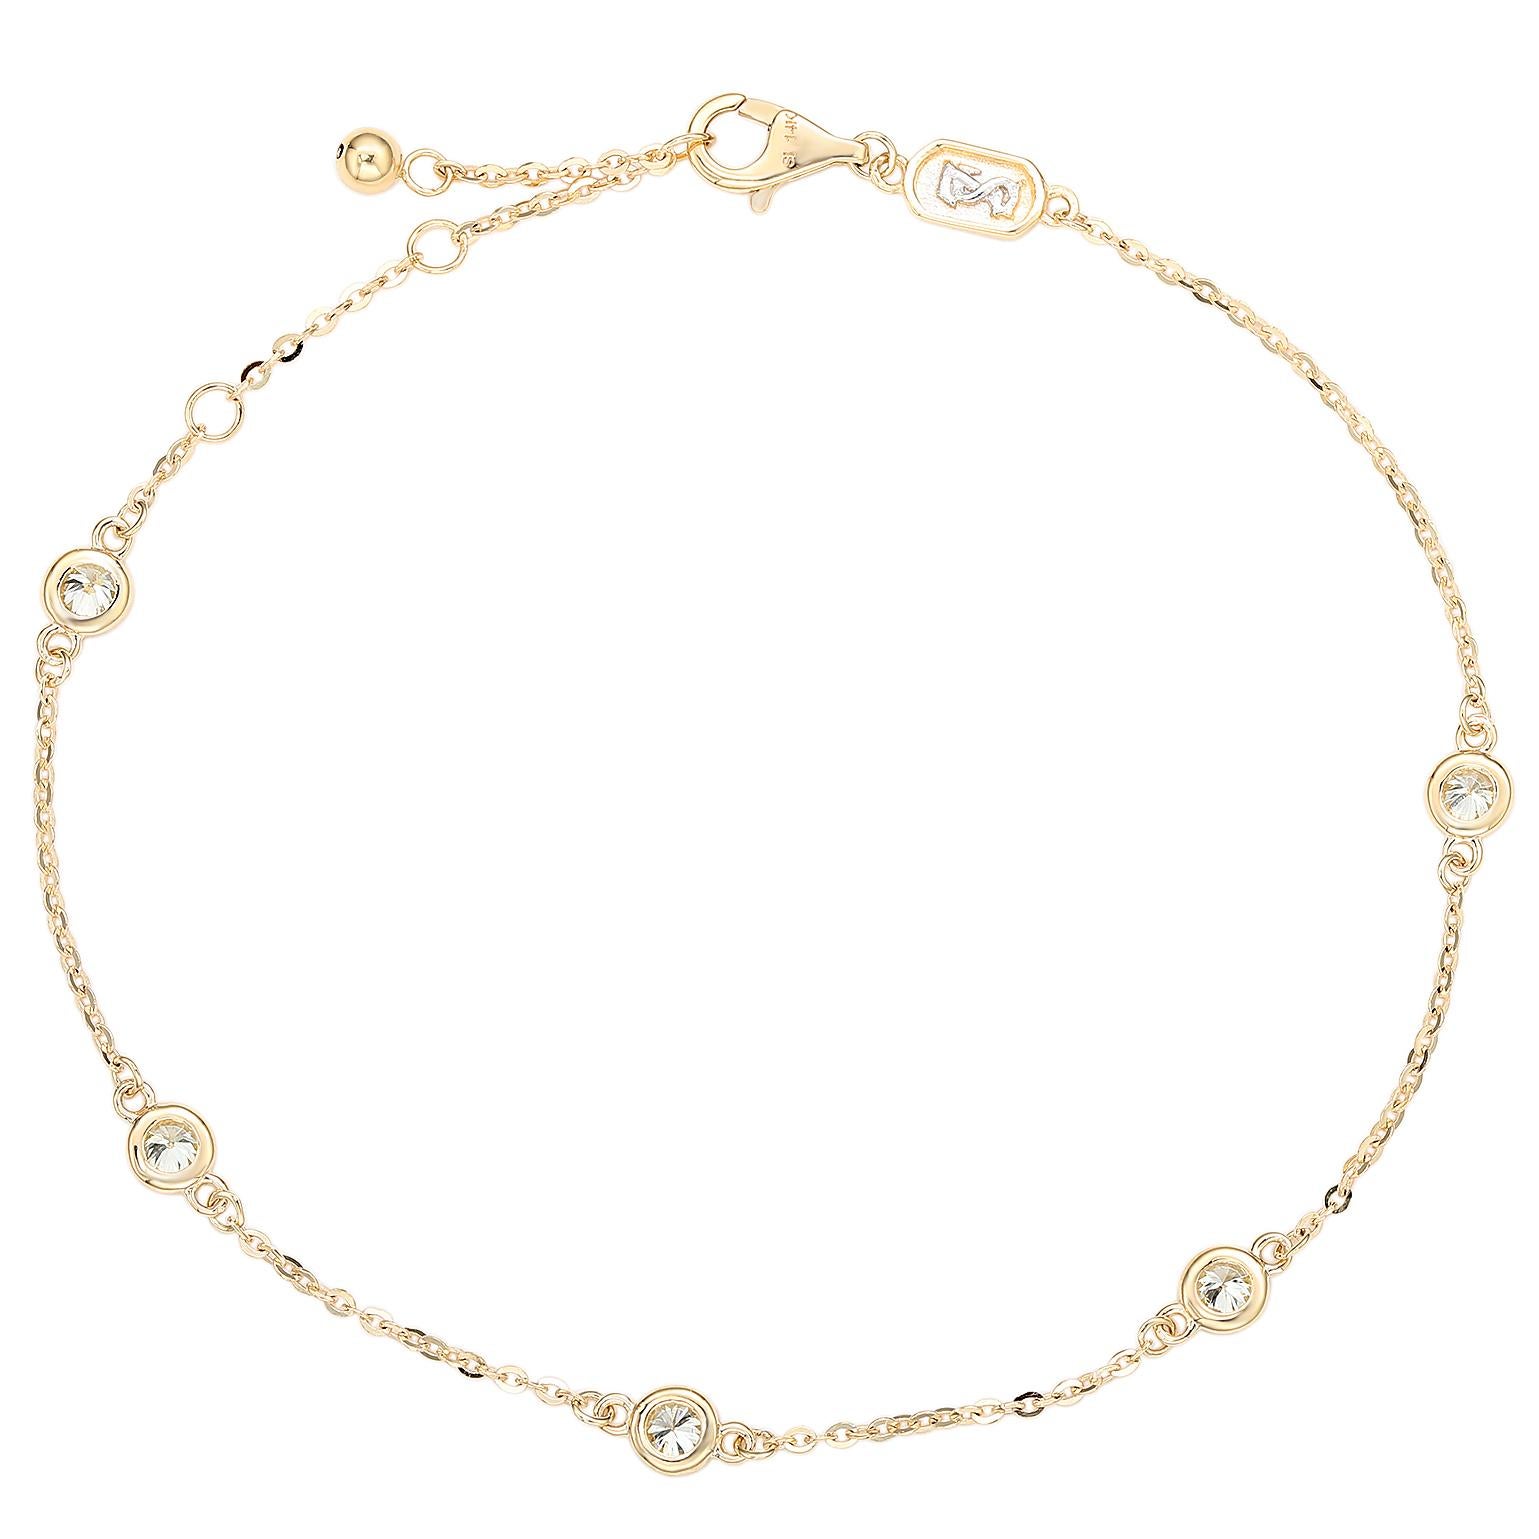 Ajoutez de l'éclat à votre poignet avec ce magnifique bracelet à station de diamants de Suzy Levian. Ce magnifique bracelet arbore 5 diamants brillants de taille ronde dans une lunette exquise ornée d'or blanc 14 carats. Ce bracelet présente une